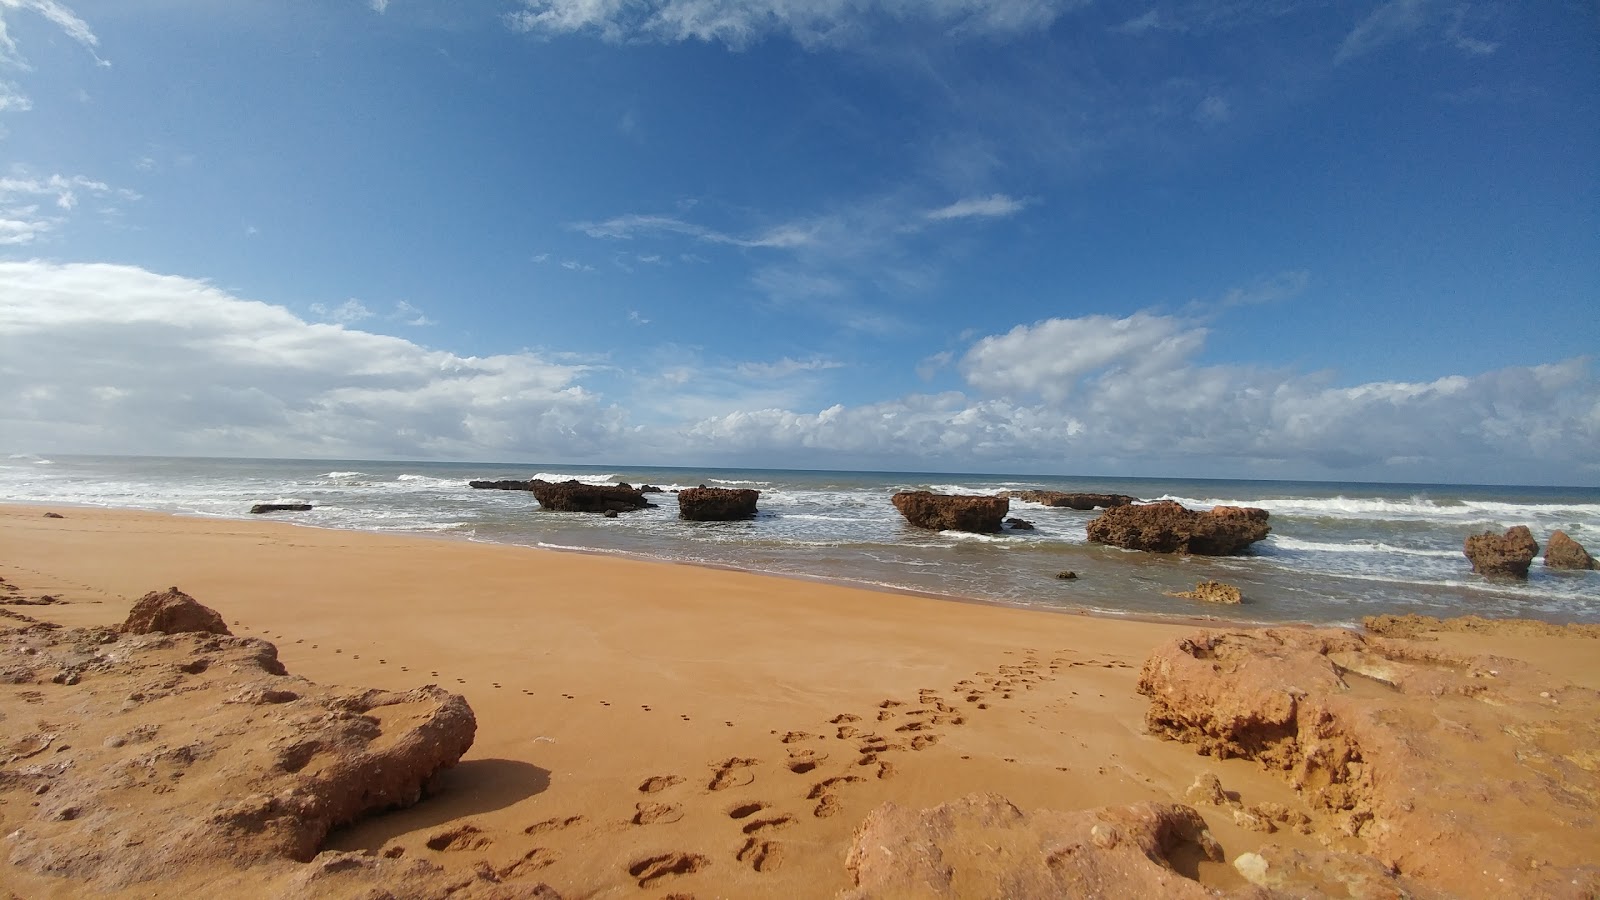 Cap Beddouza'in fotoğrafı parlak ince kum yüzey ile